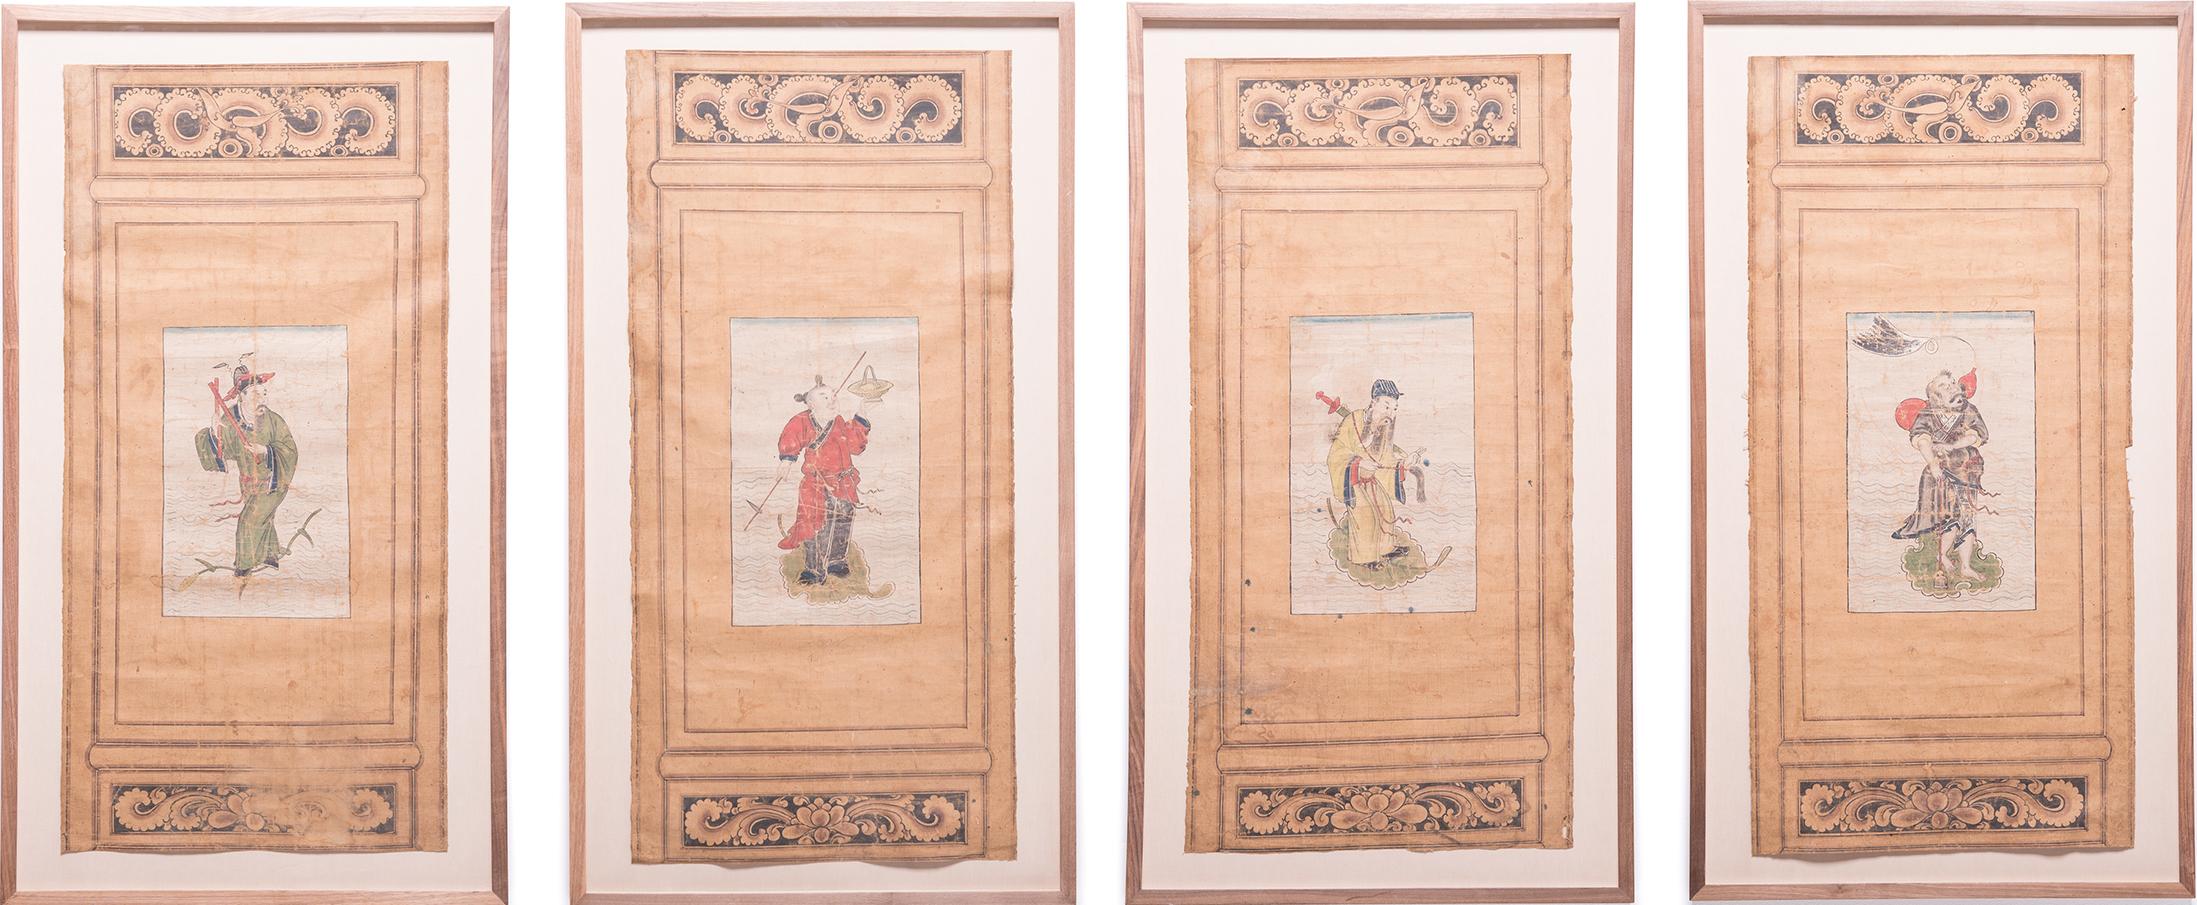 Ensemble de quatre peintures sur paravent d'immortels chinois, vers 1850